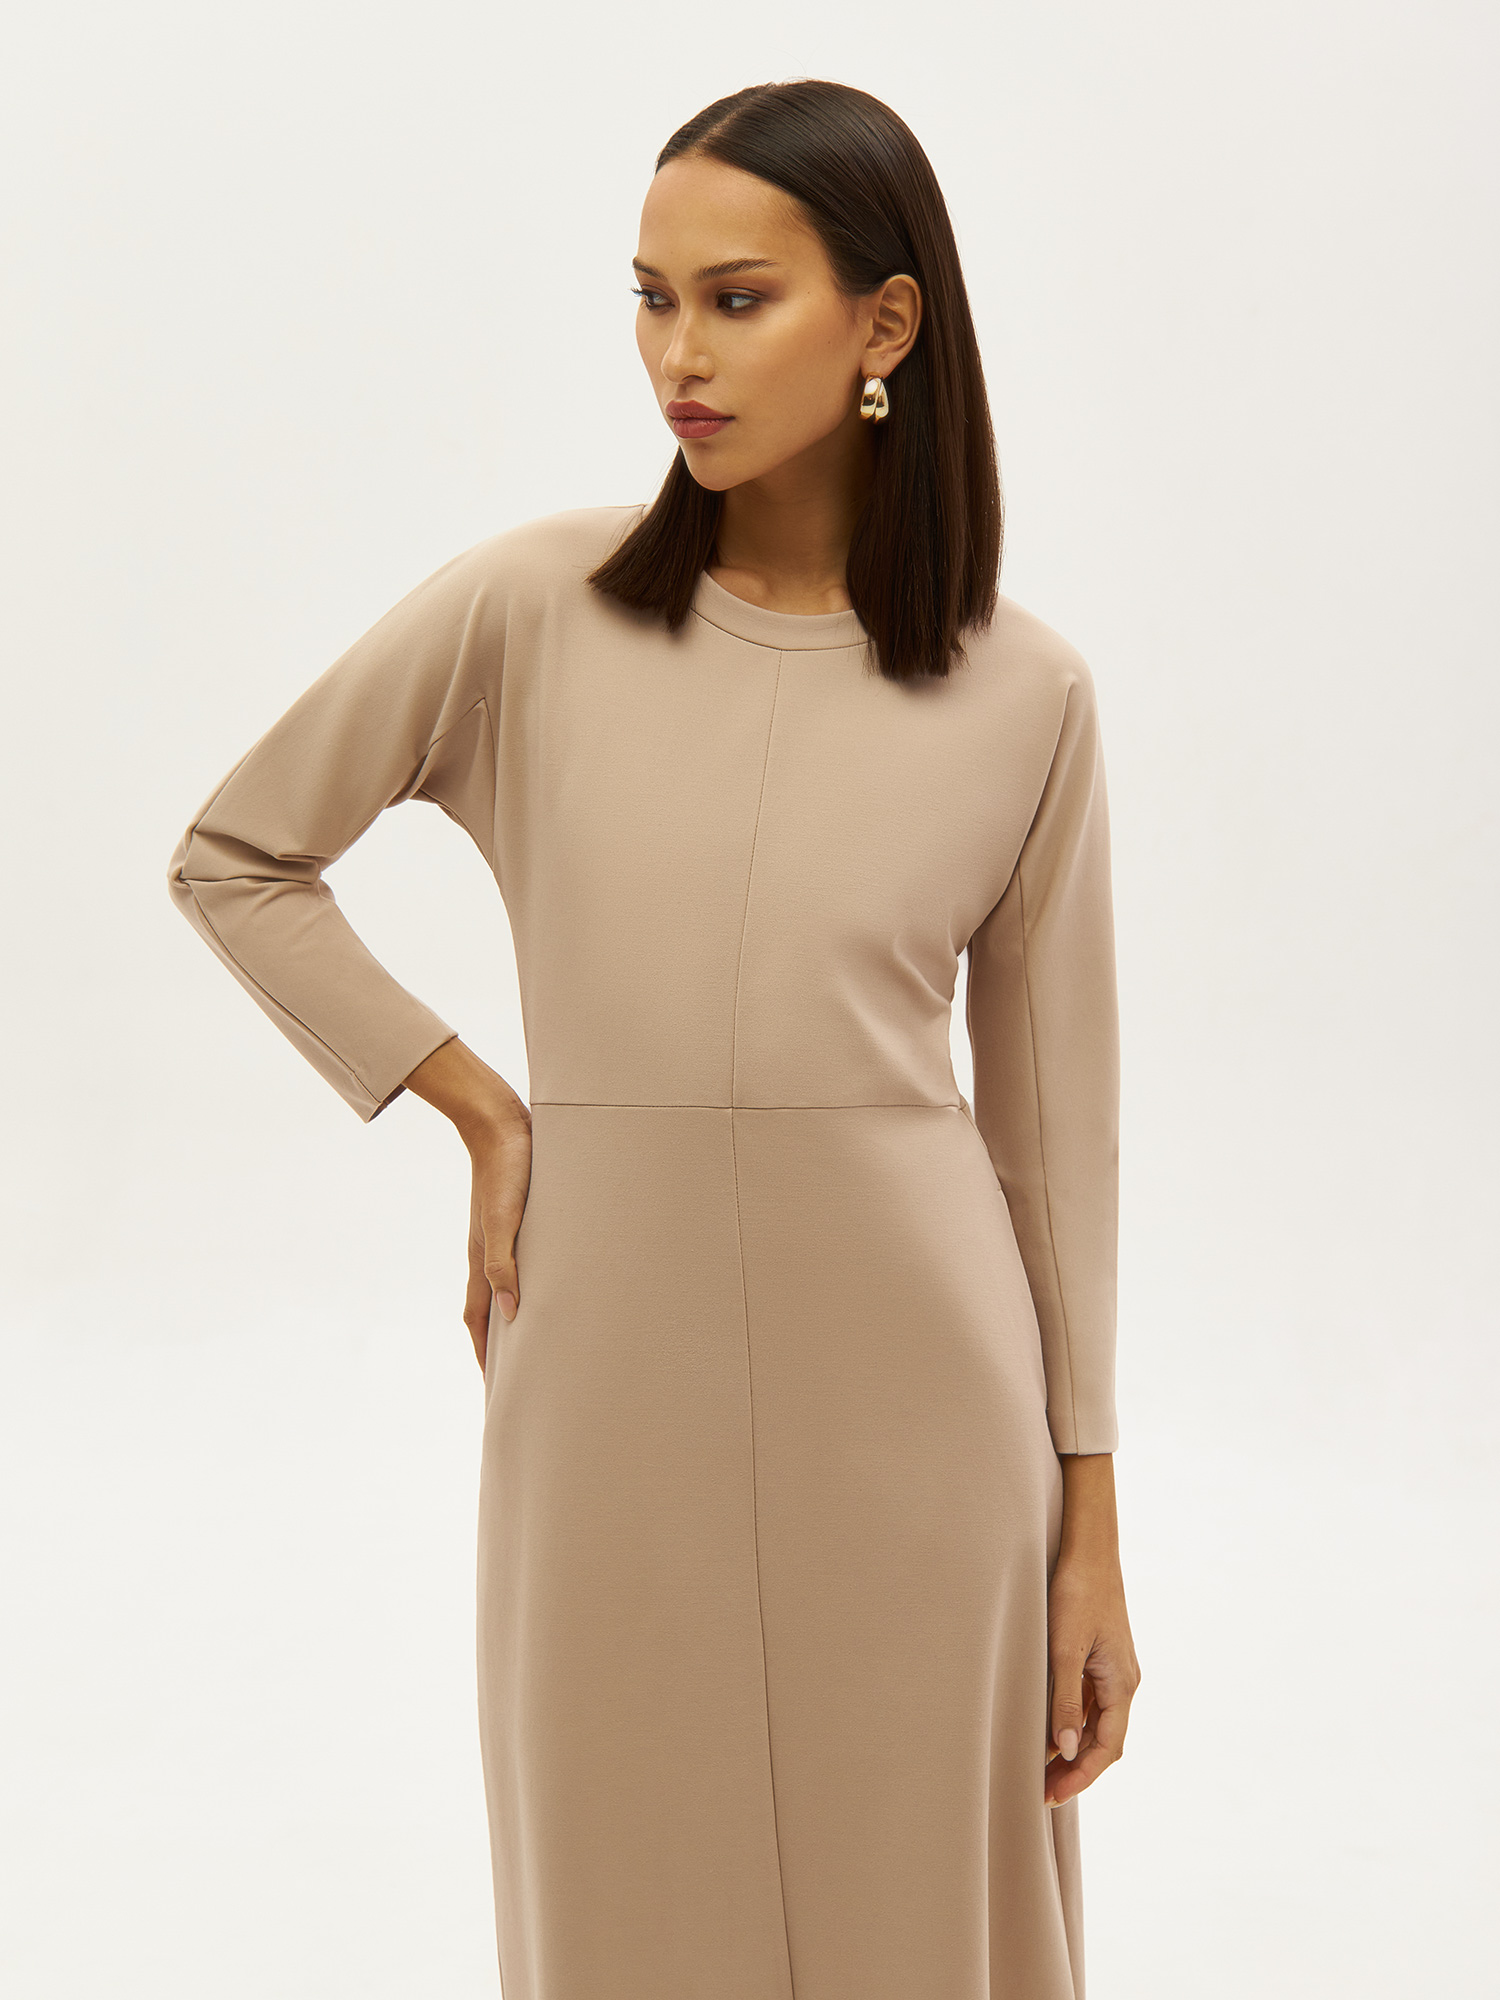 Трикотажное платье PAVO со светоотражающим брендингом. Изображение 5